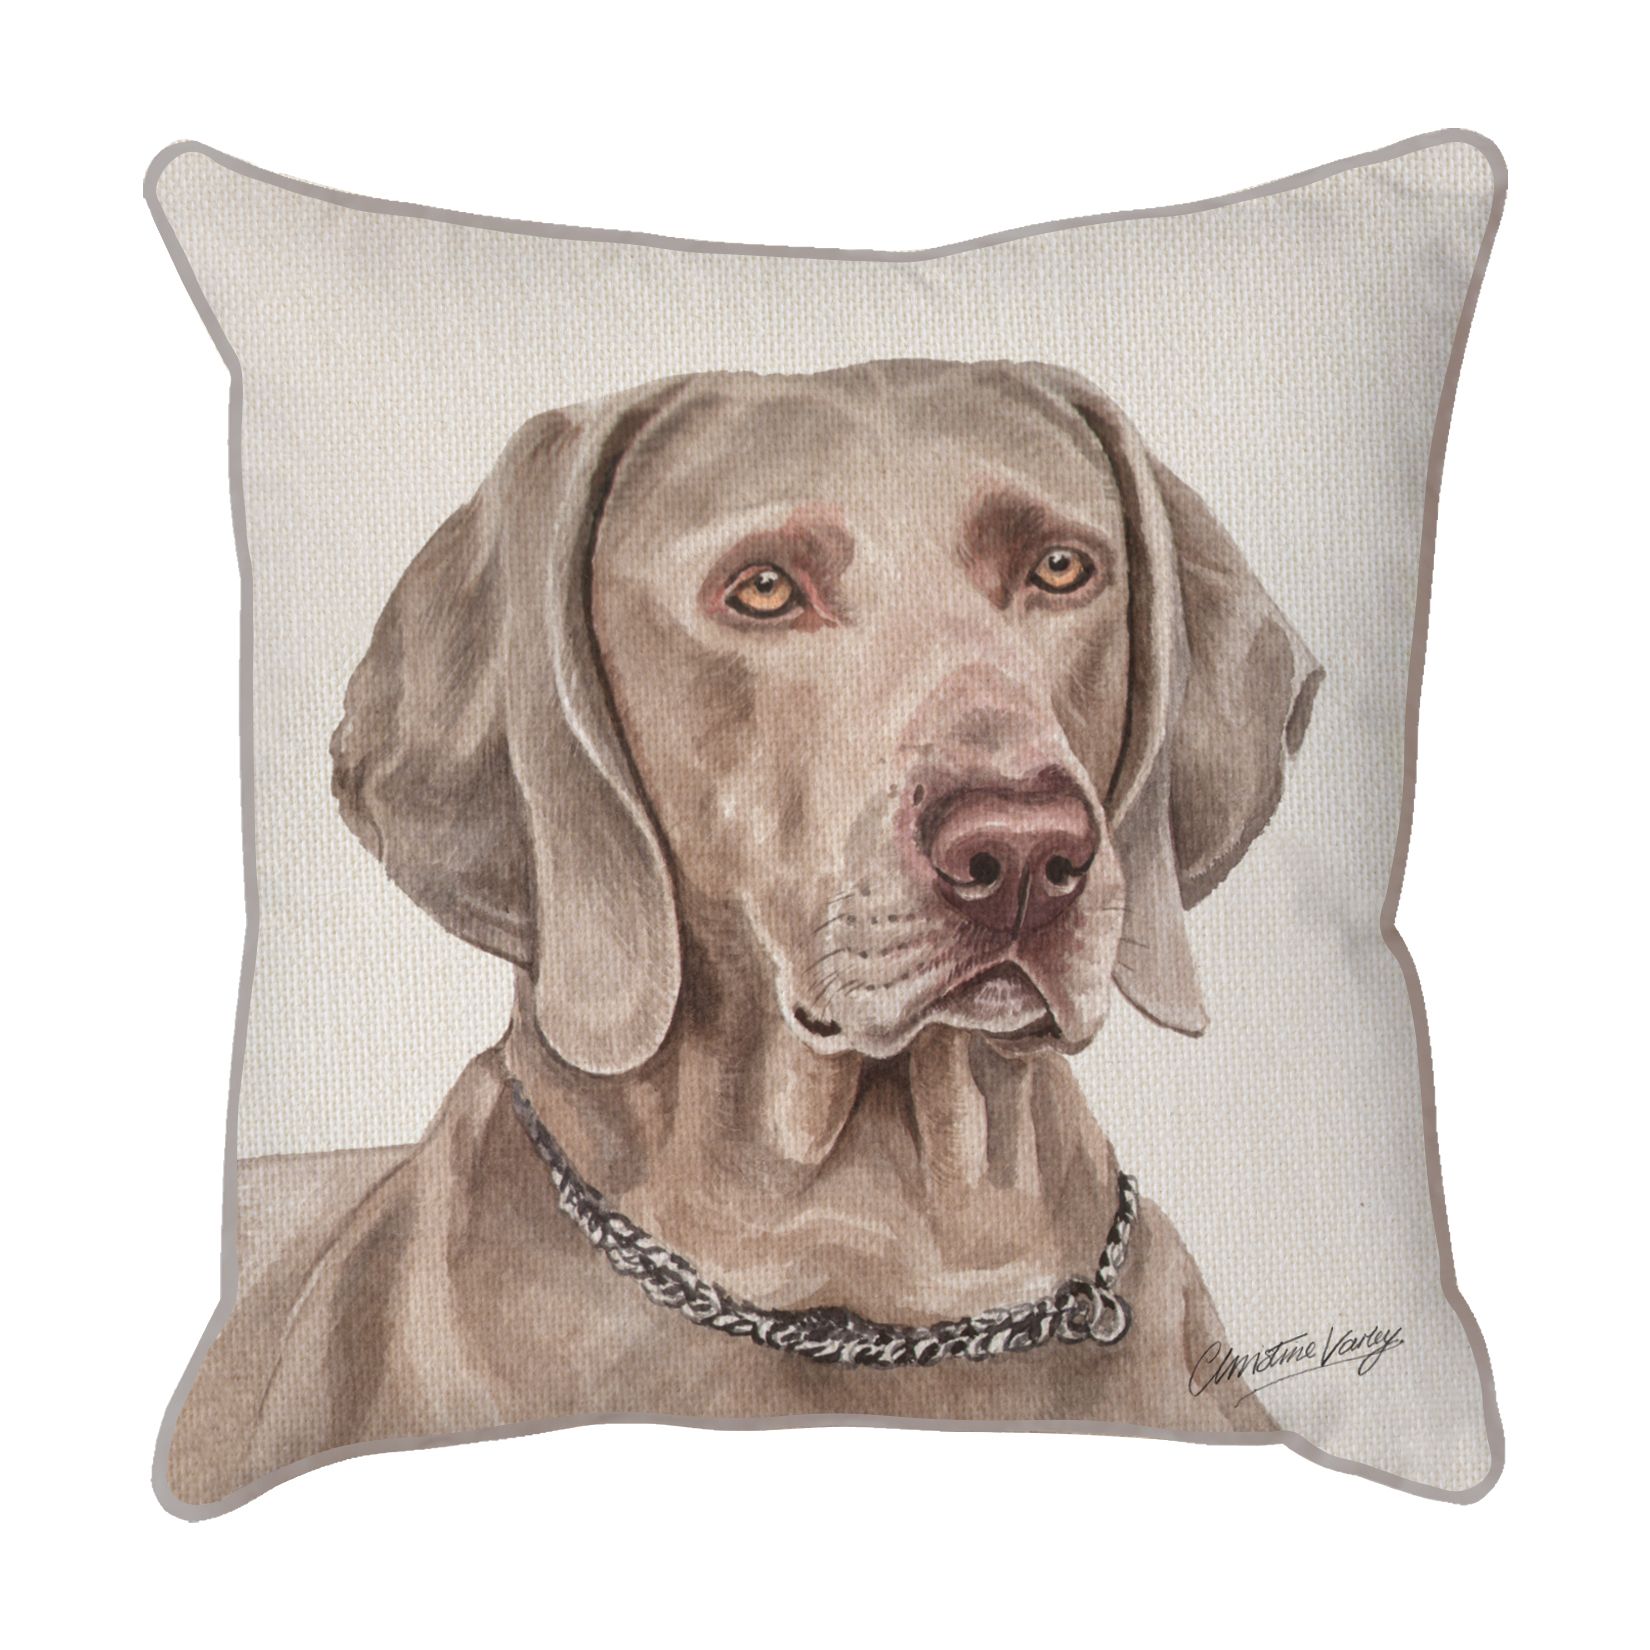 Weimaraner Dog Scatter Cushion